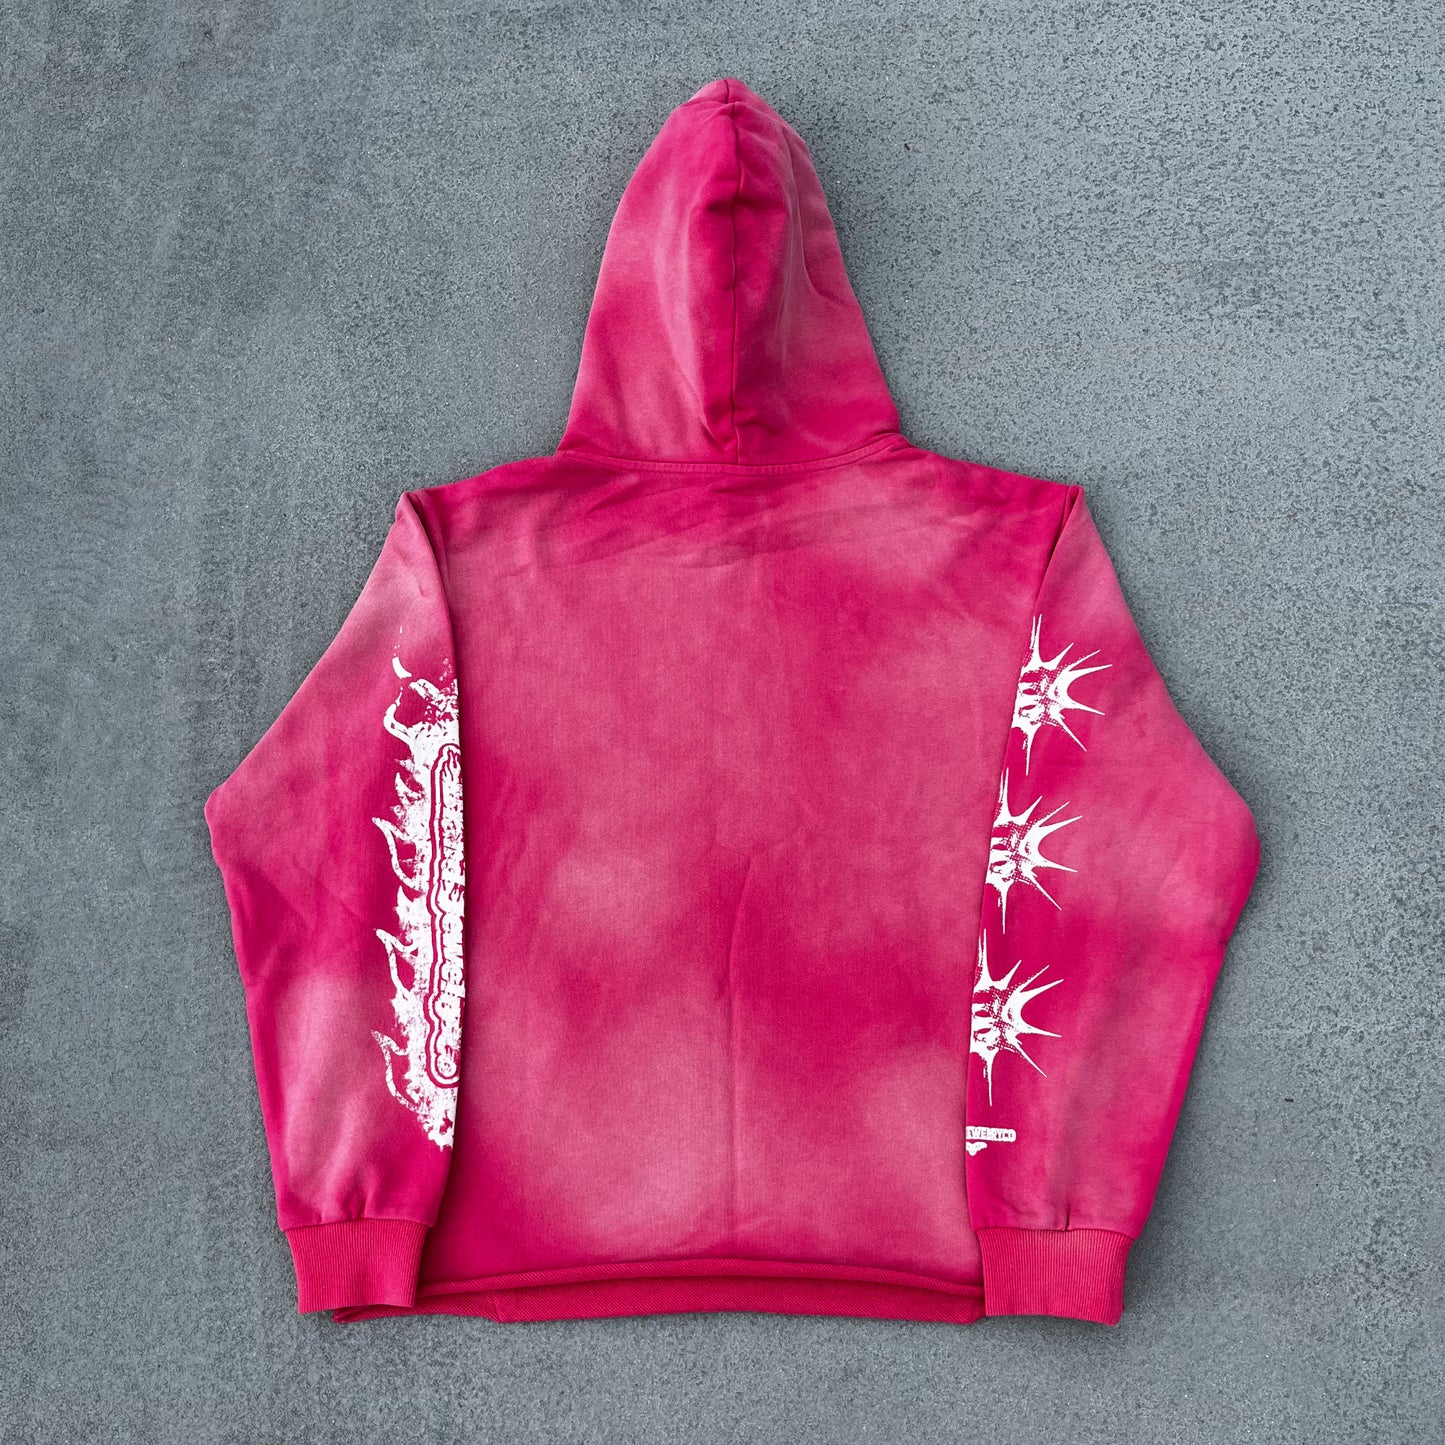 strawberry joker hoodie